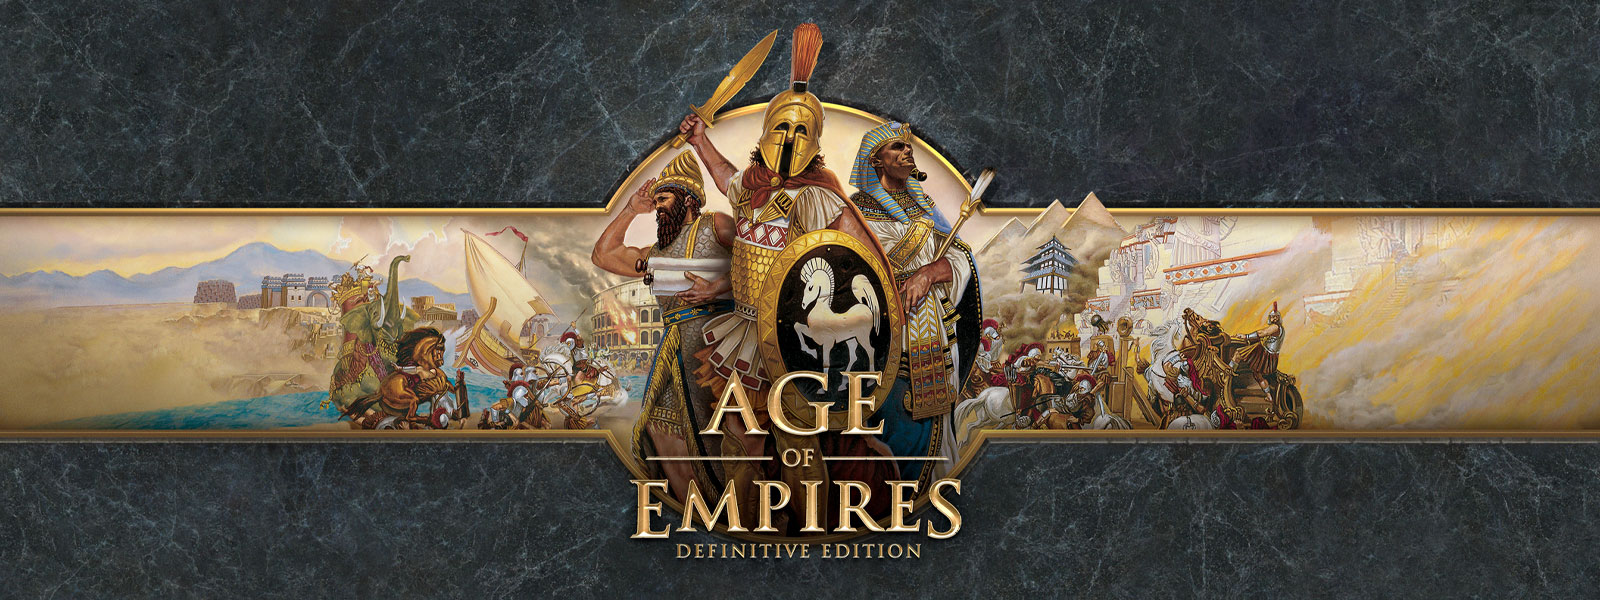 Age of Empires: Definitive Edition (logo) sur fond d'ardoise grise représentant des chefs de guerre et leurs armées